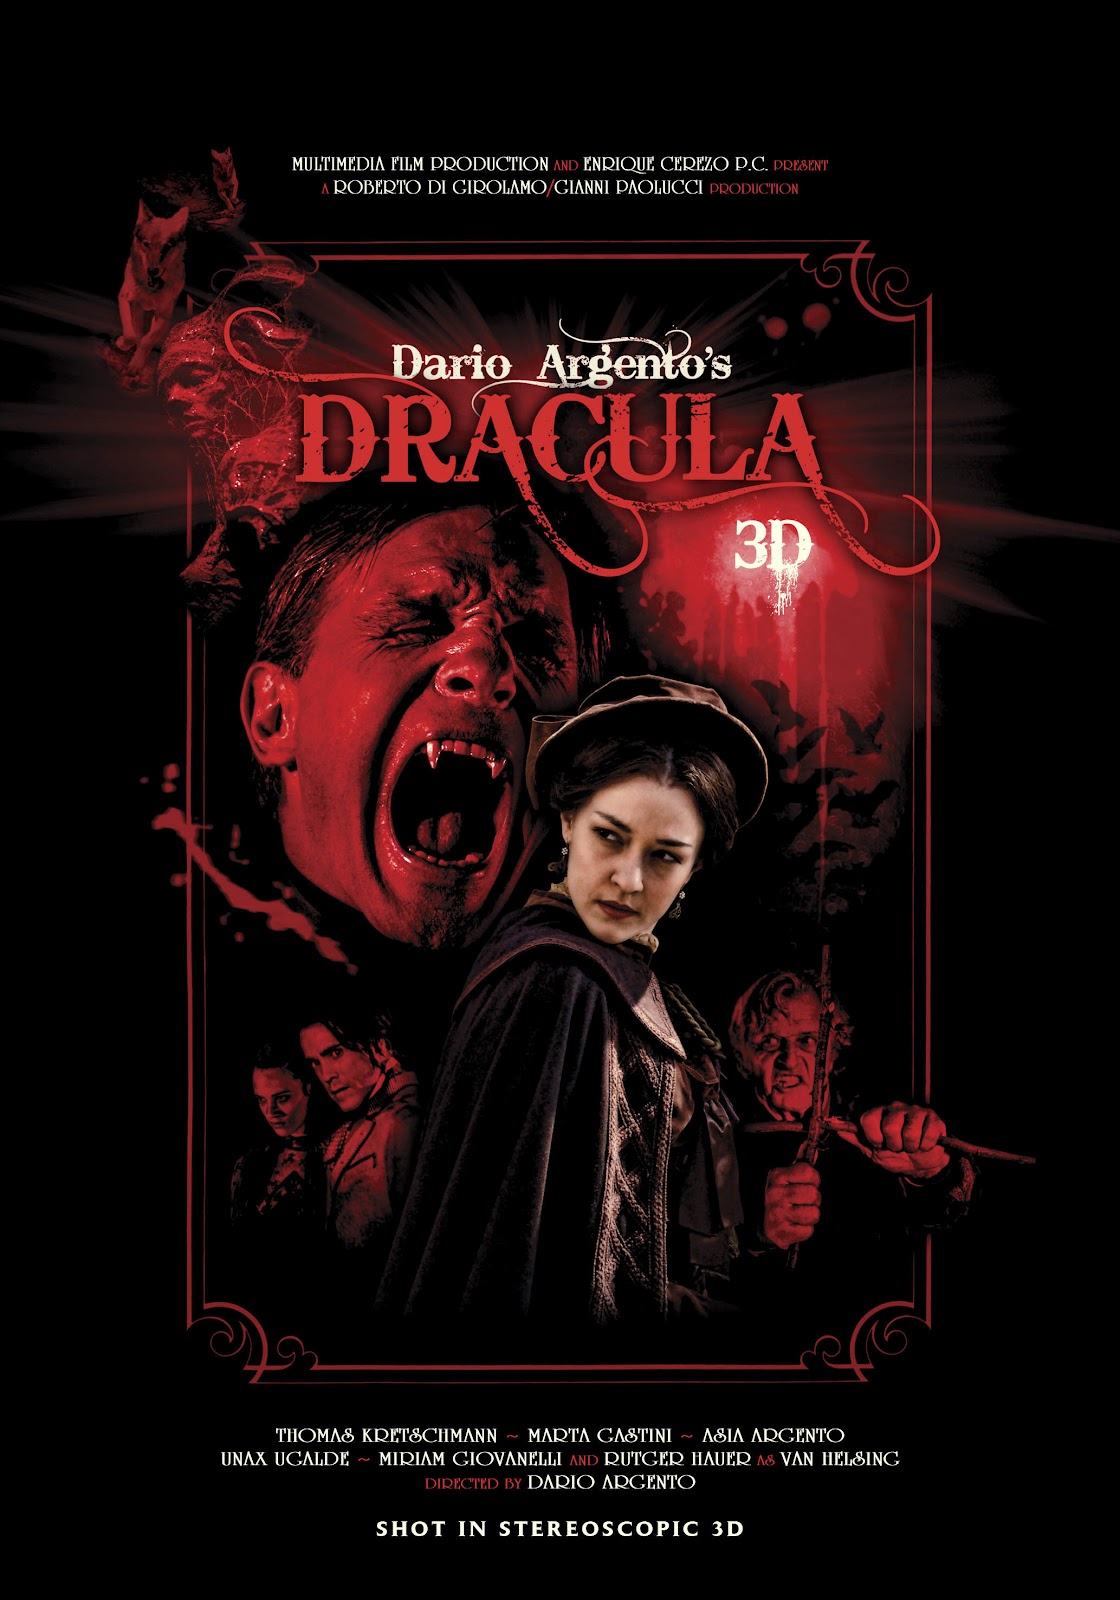 Las ultimas peliculas que has visto - Página 3 Dracula+3D+POSTER+2